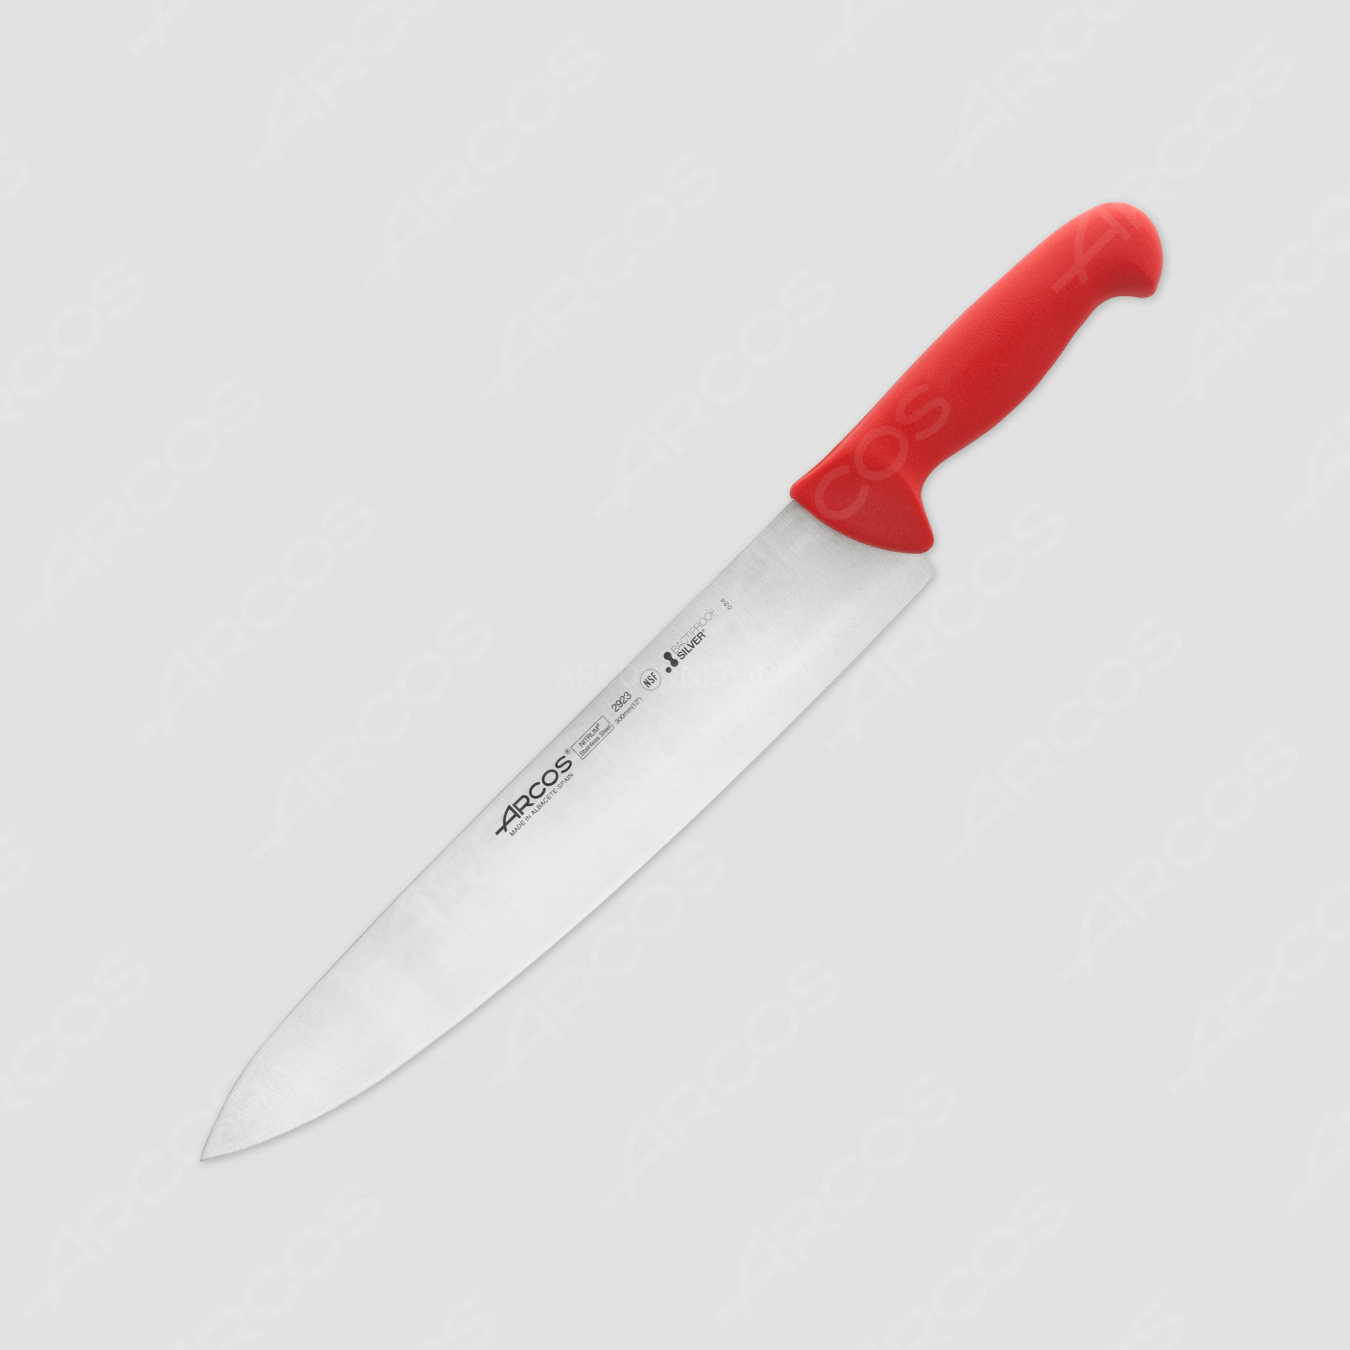 Нож кухонный поварской 30 см, рукоять - красная, серия 2900, ARCOS, Испания